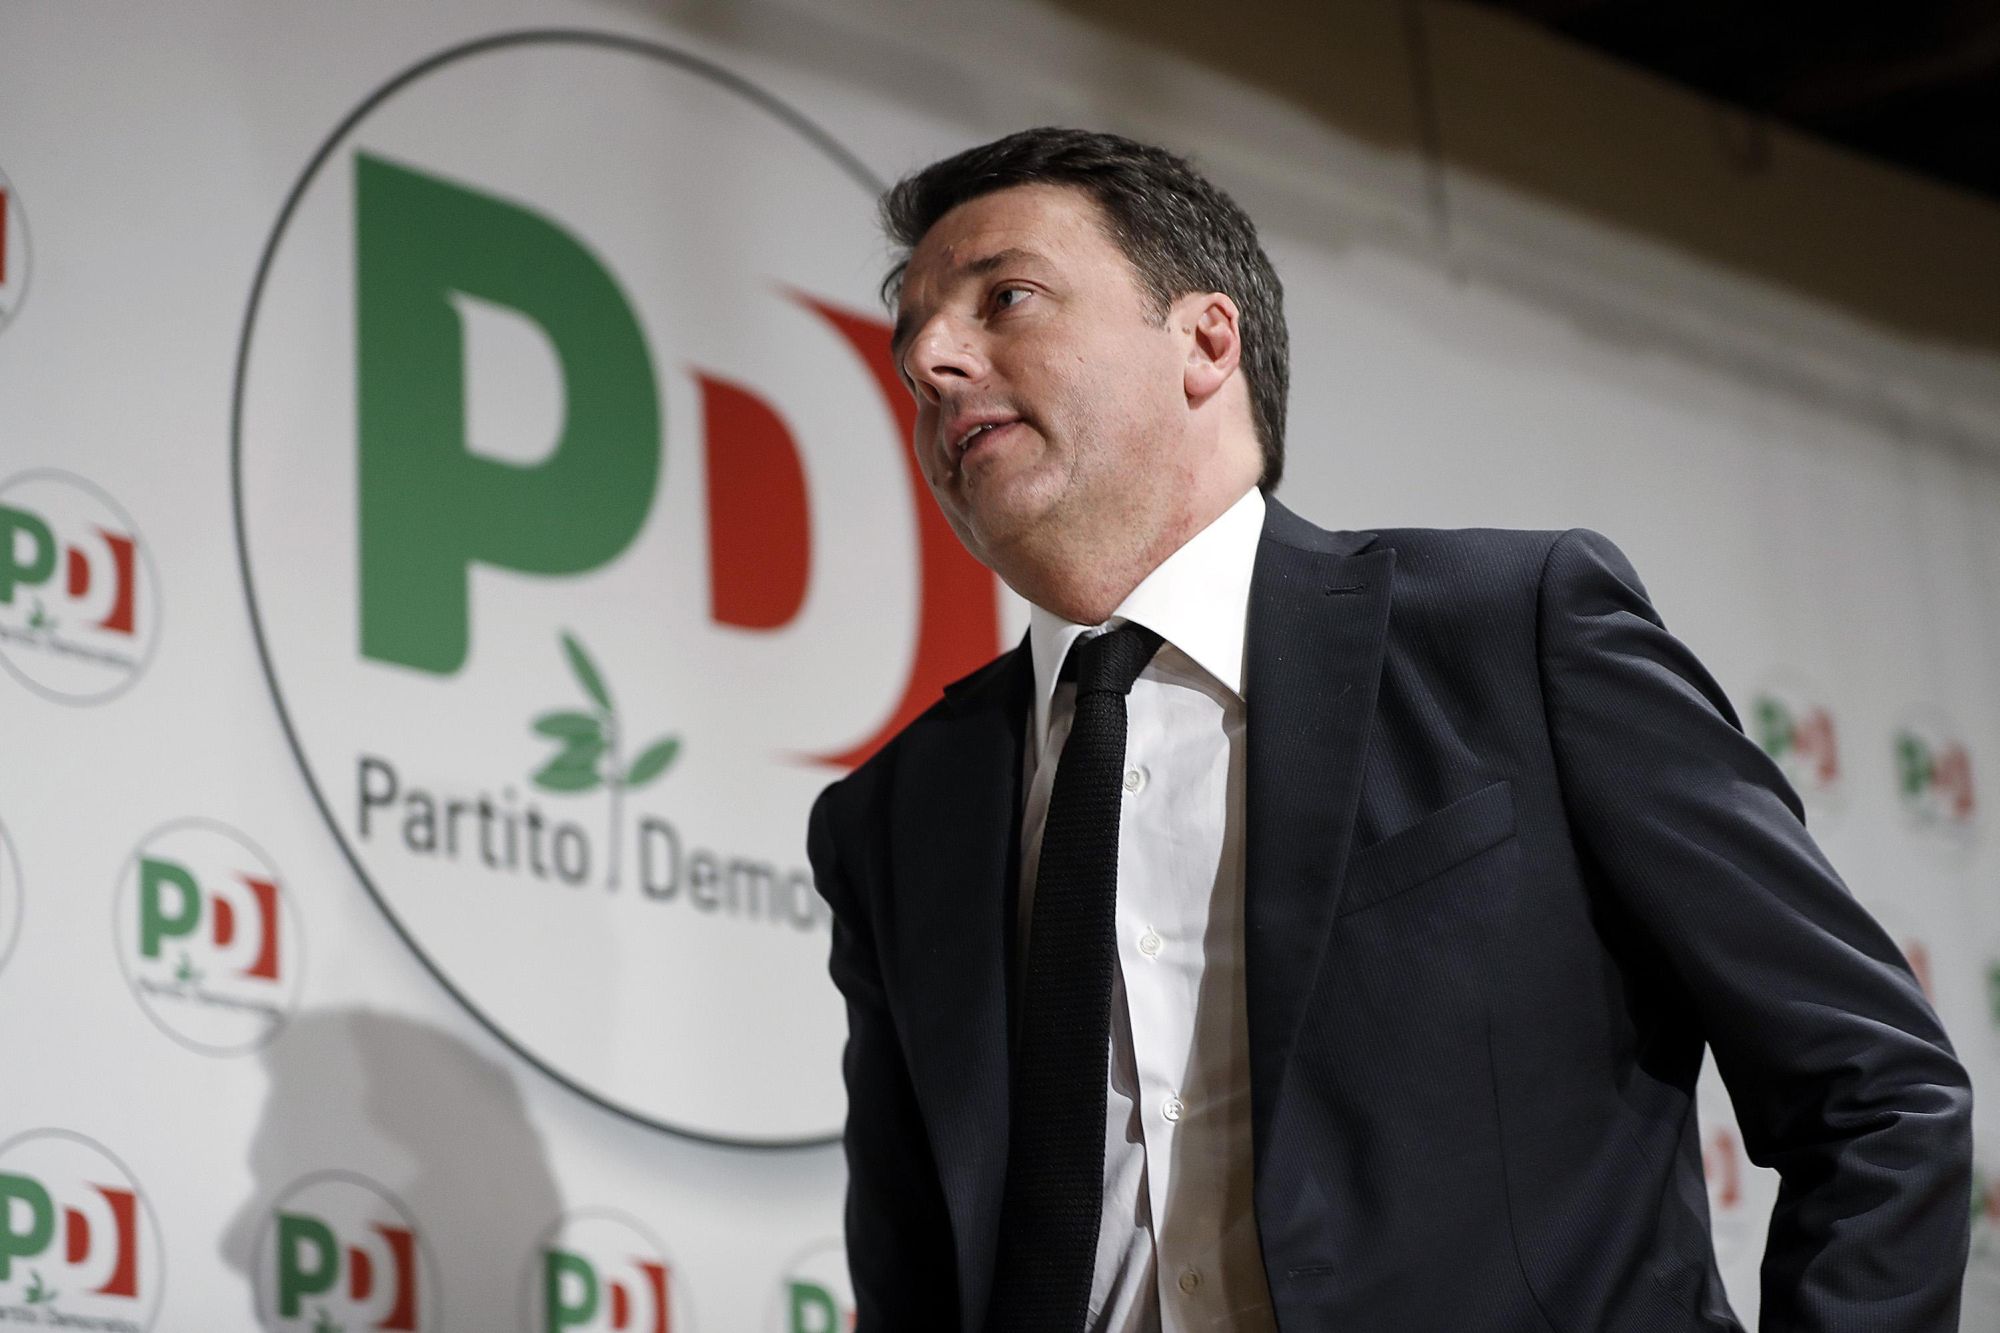 Matteo Renzi volt miniszterelnök, a PD volt főtitkára a lemondását bejelentő sajtótájékoztatón Rómában, 2018. március 5-én. Renzi a PD gyenge választási eredményeit követően döntött úgy, hogy lemond főtitkári tisztségéről. EPA/RICCARDO ANTIMIANI